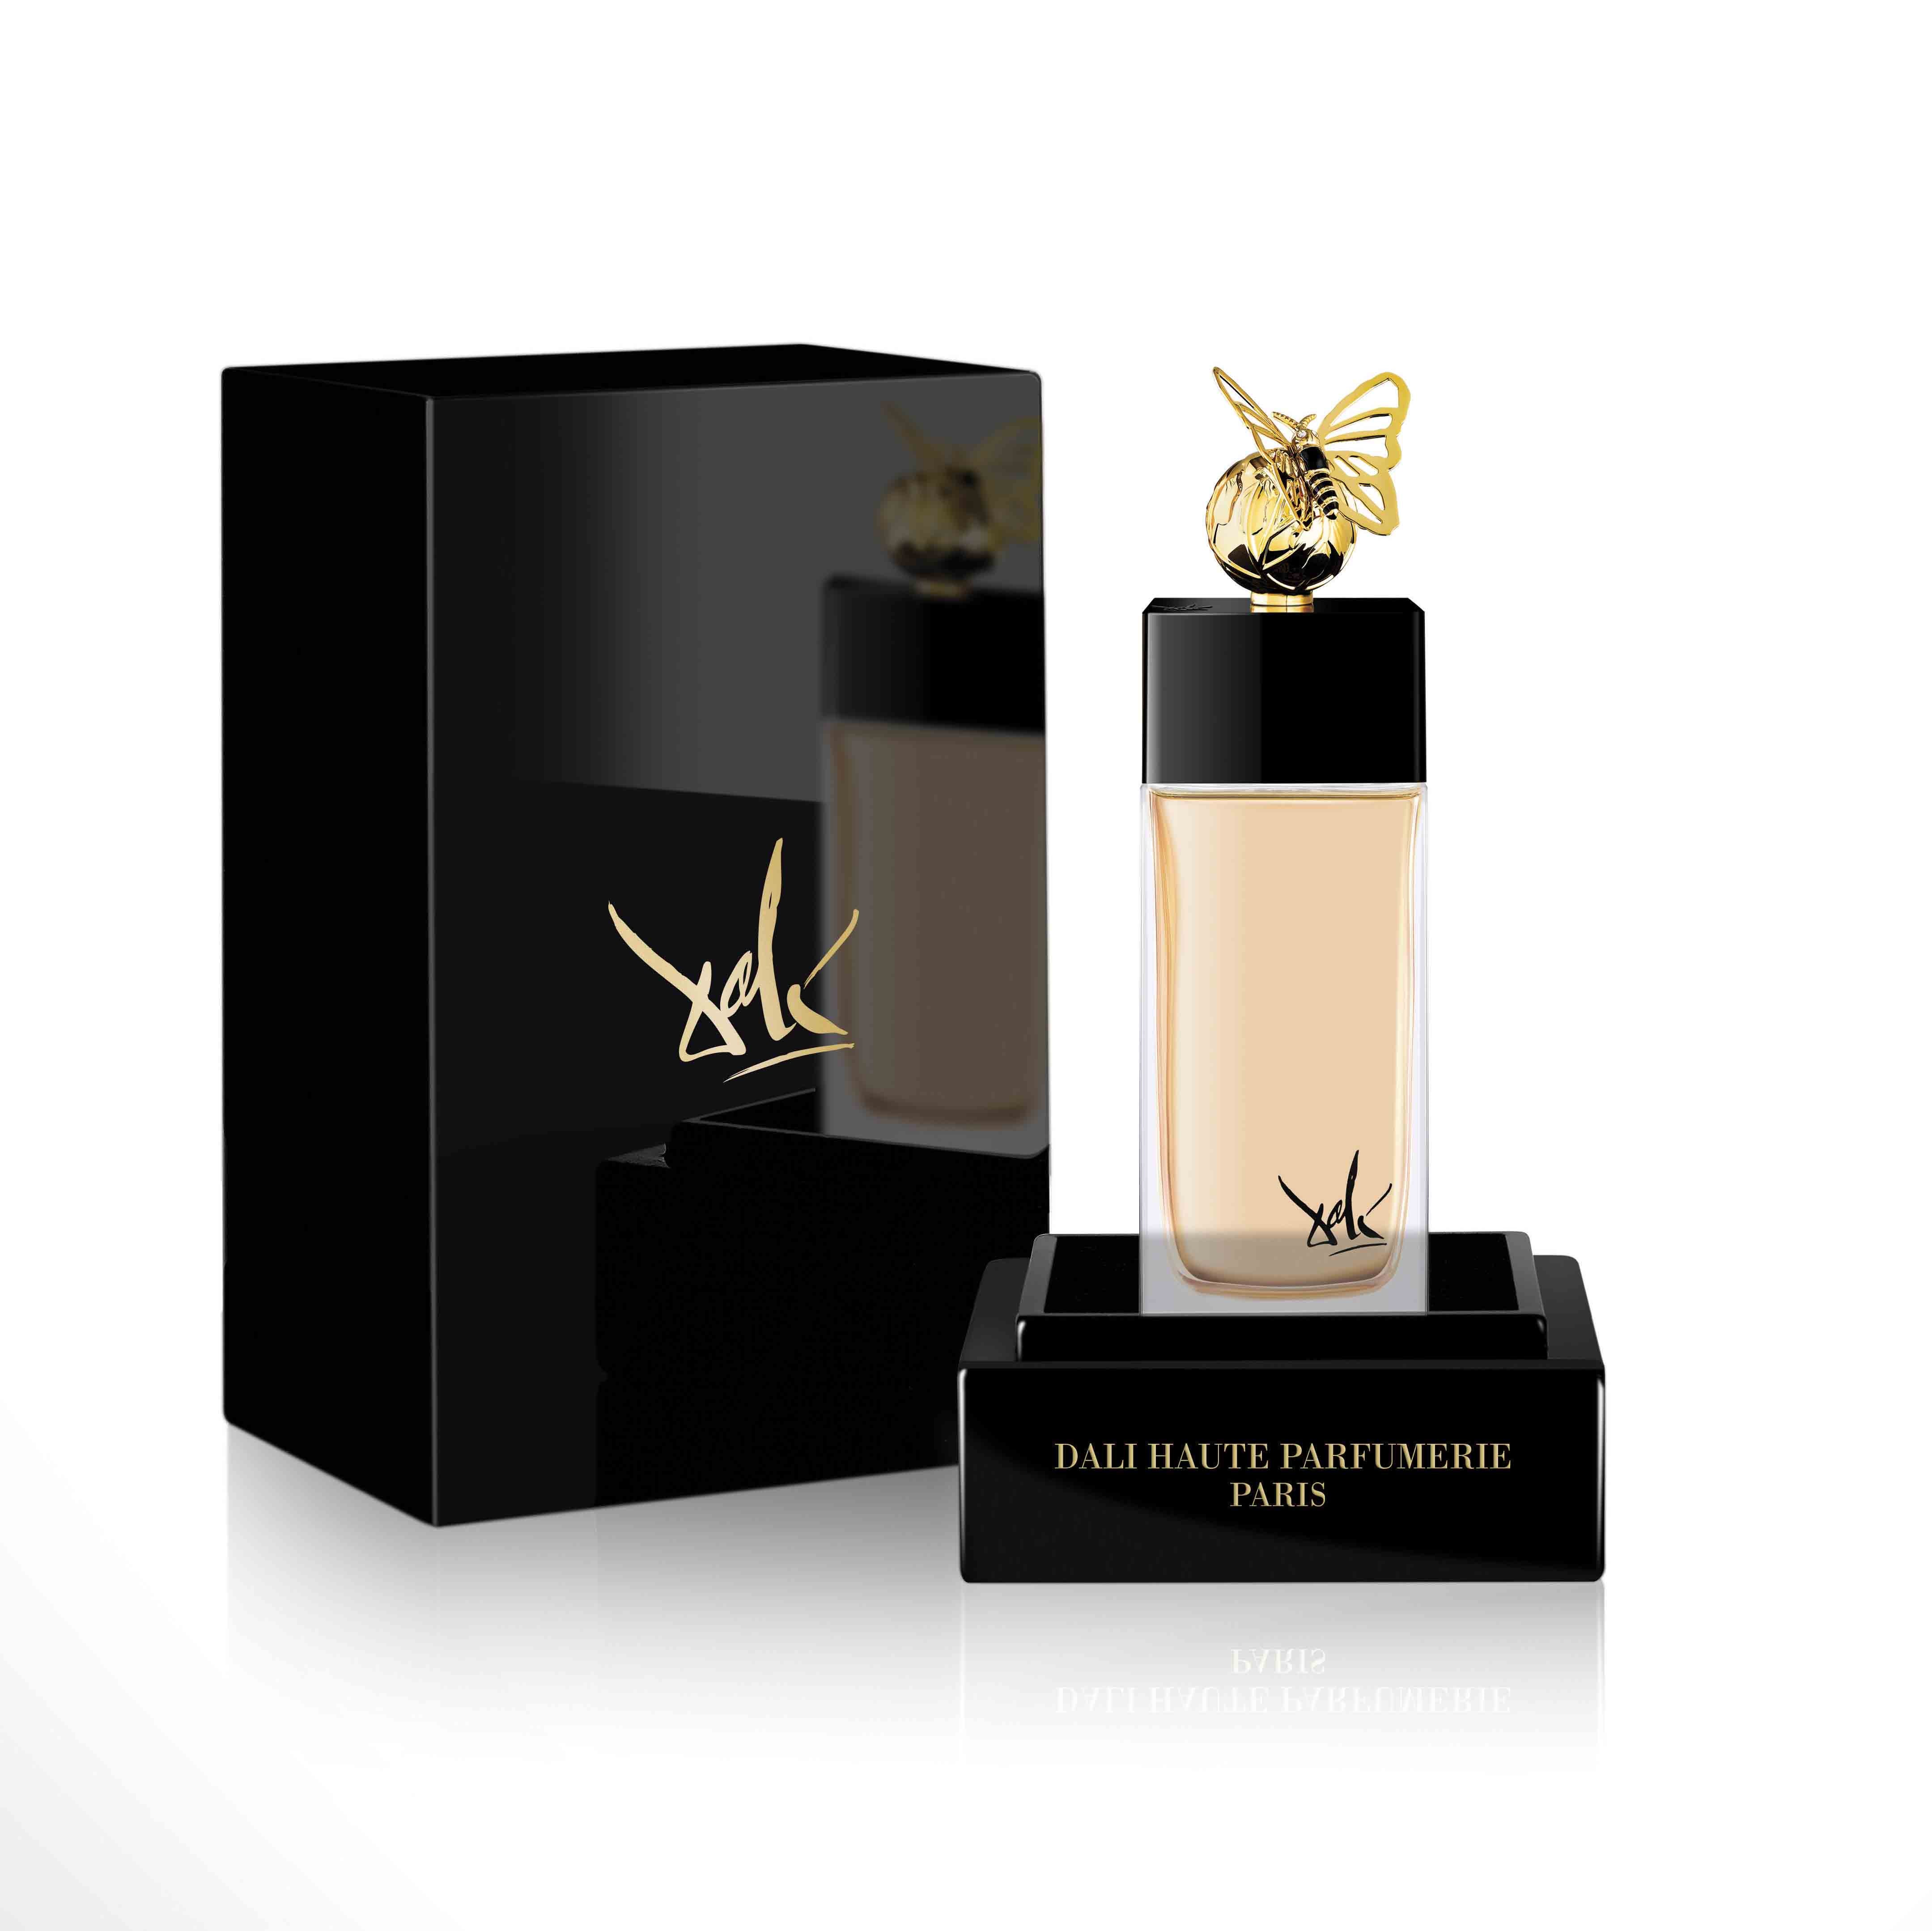 Voyage Onirique Du Papillon De Vie (The Butterfly) 100ml Eau de Parfum Bottle and Box by Dalí Haute Parfumerie